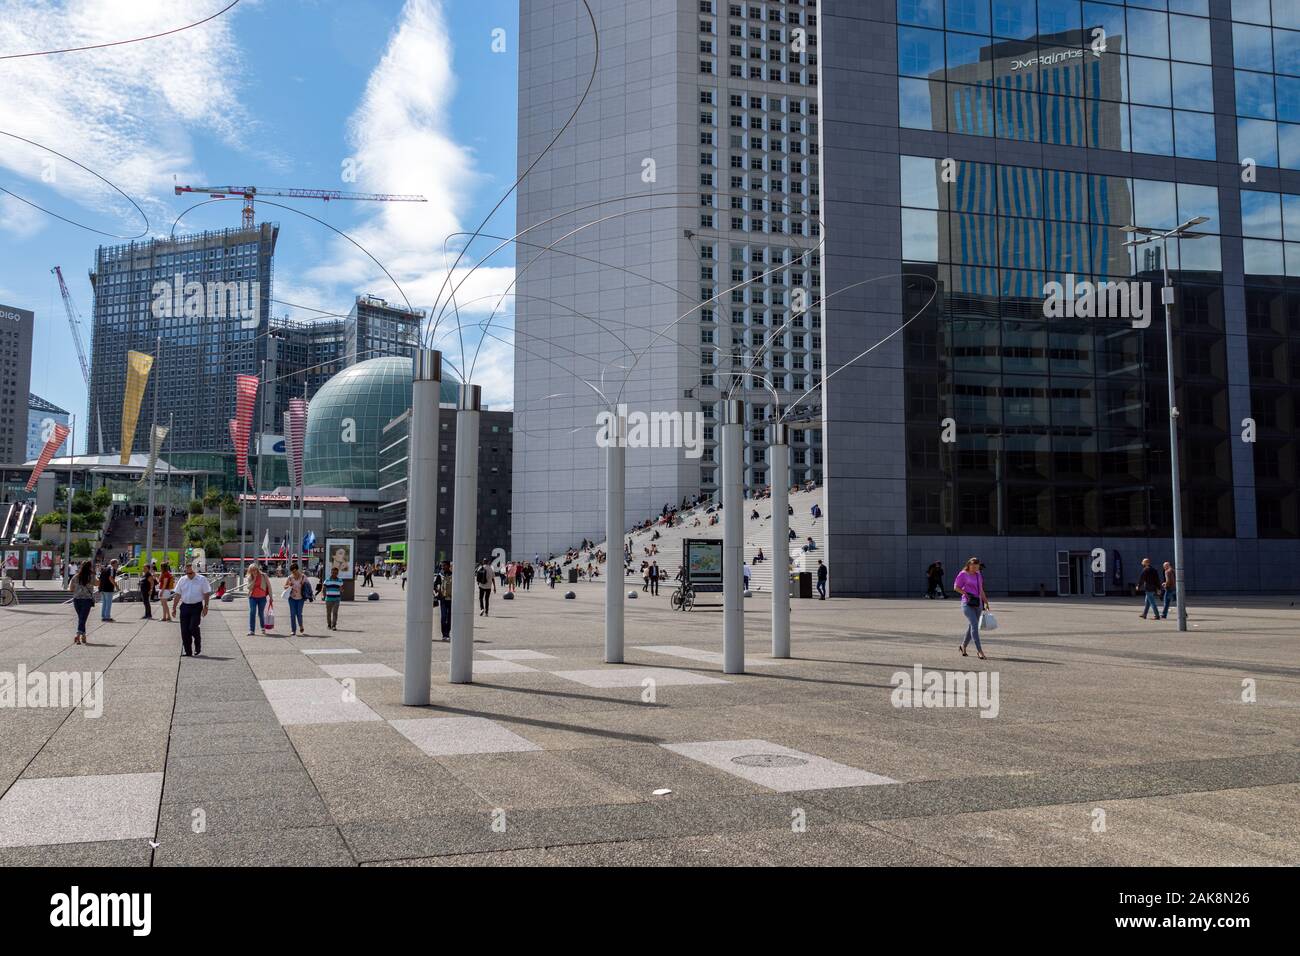 Paris, Frankreich: Stadtbild von La Defense Business District in der Nähe von Paris mit Utsurohi Kunstwerk im Vordergrund Stockfoto